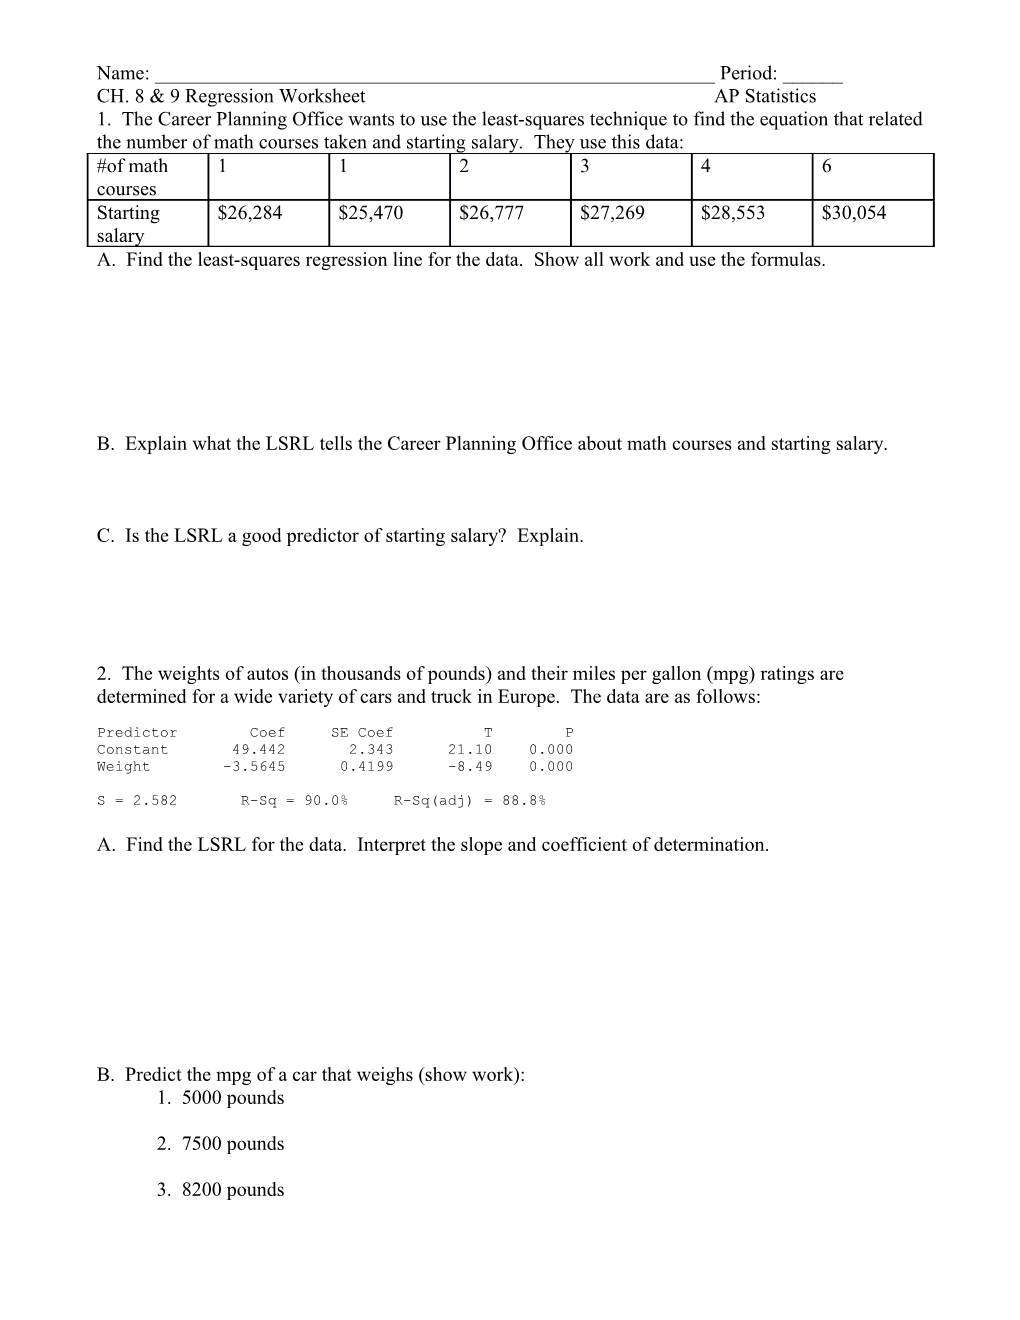 CH. 8 & 9 Regression Worksheetap Statistics